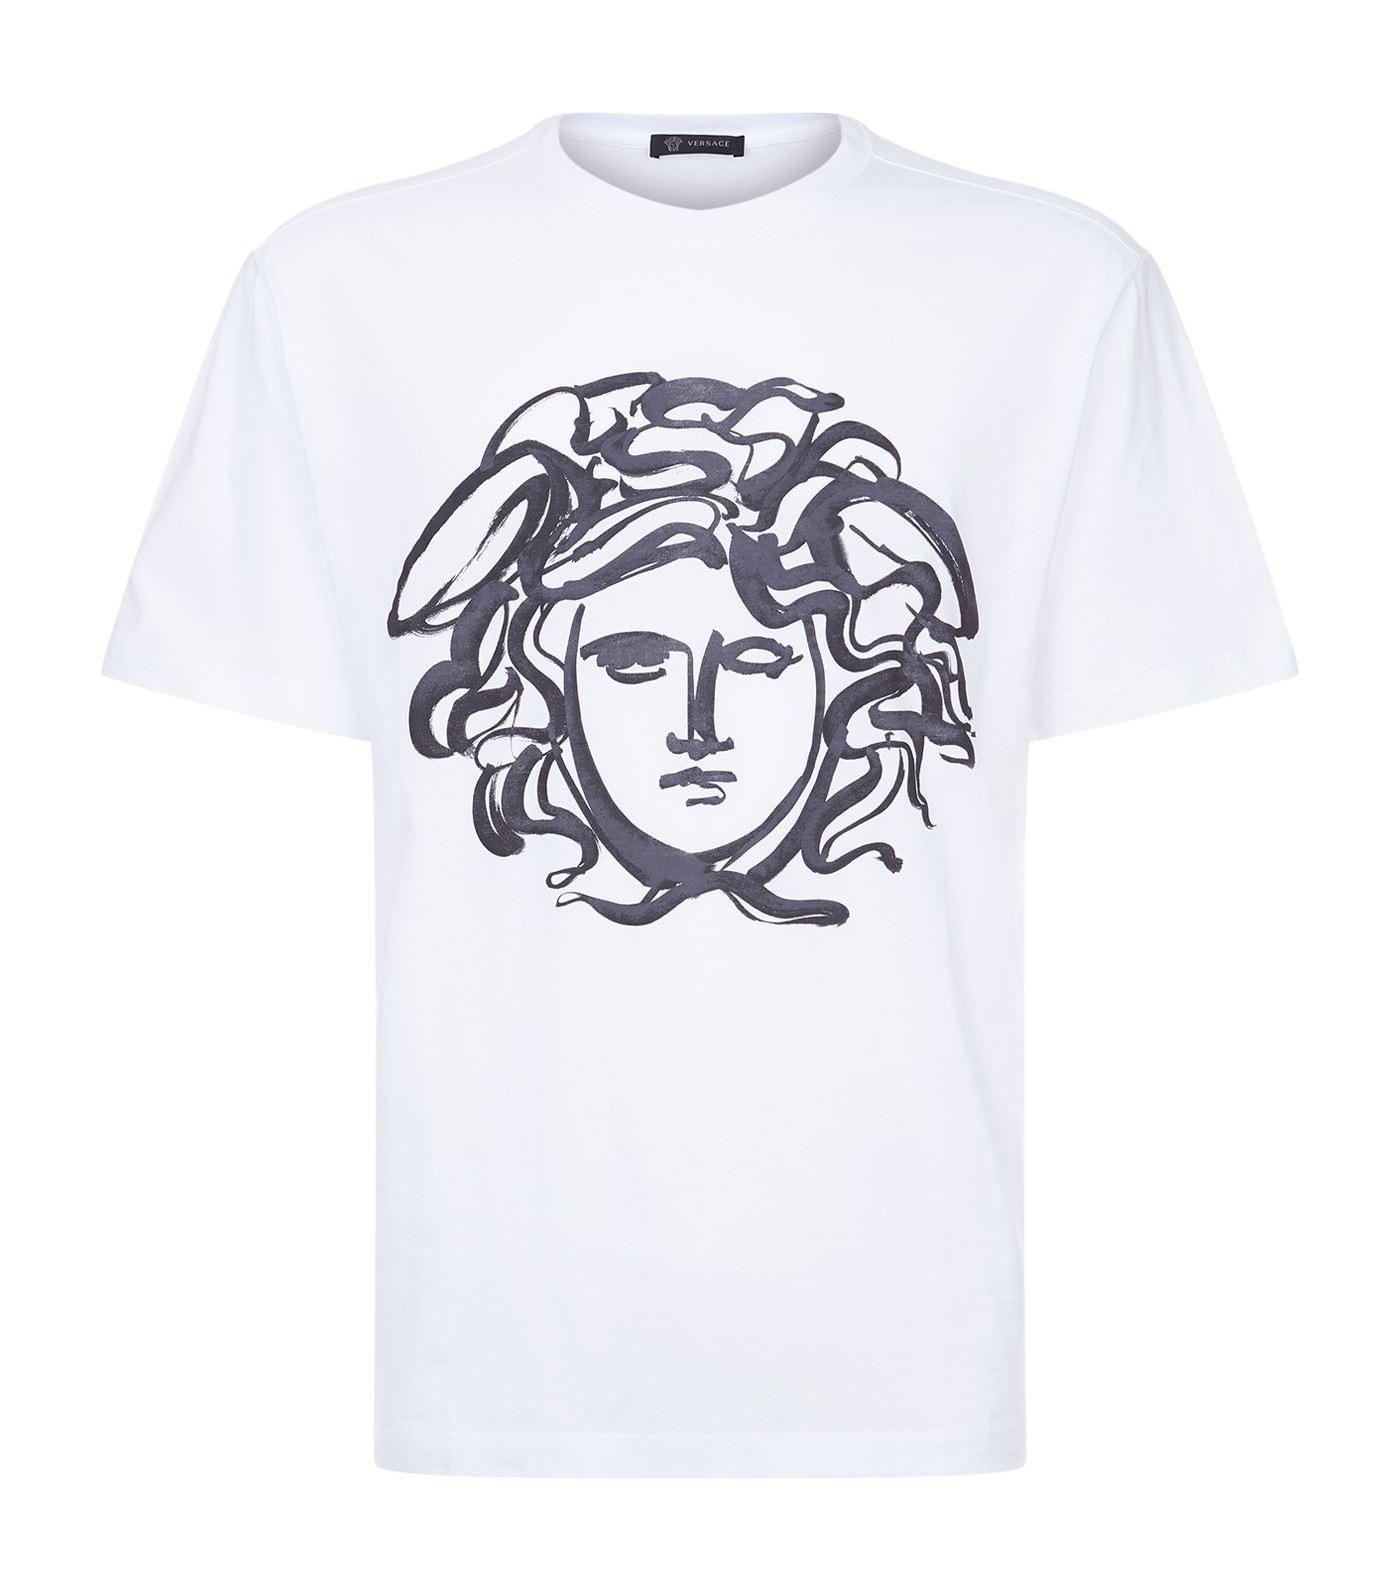 Versace Cotton Graffiti Medusa Print T-shirt in White for Men - Lyst